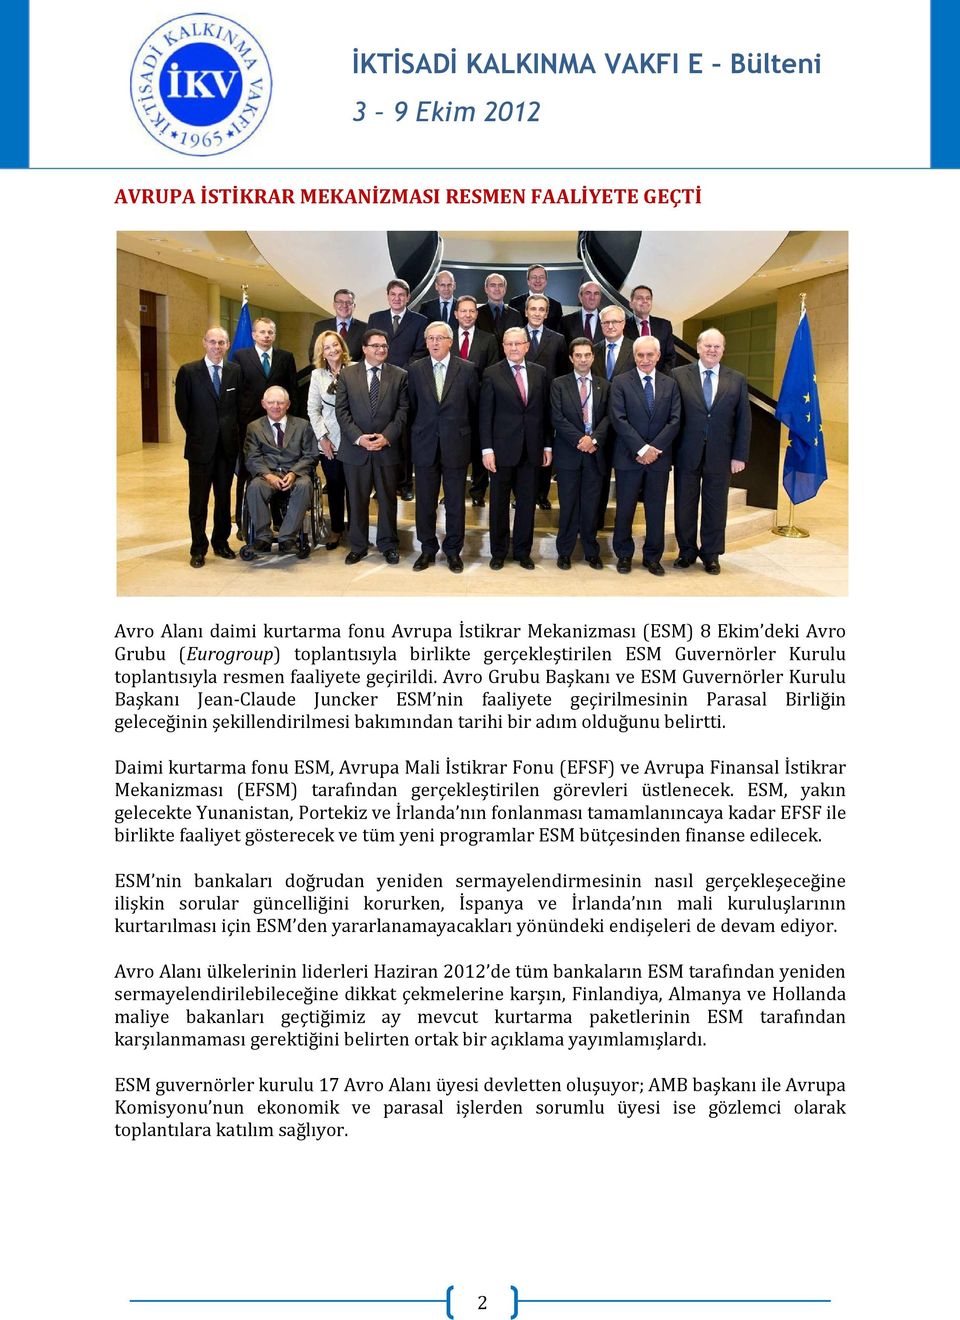 Avro Grubu Başkanı ve ESM Guvernörler Kurulu Başkanı Jean-Claude Juncker ESM nin faaliyete geçirilmesinin Parasal Birliğin geleceğinin şekillendirilmesi bakımından tarihi bir adım olduğunu belirtti.